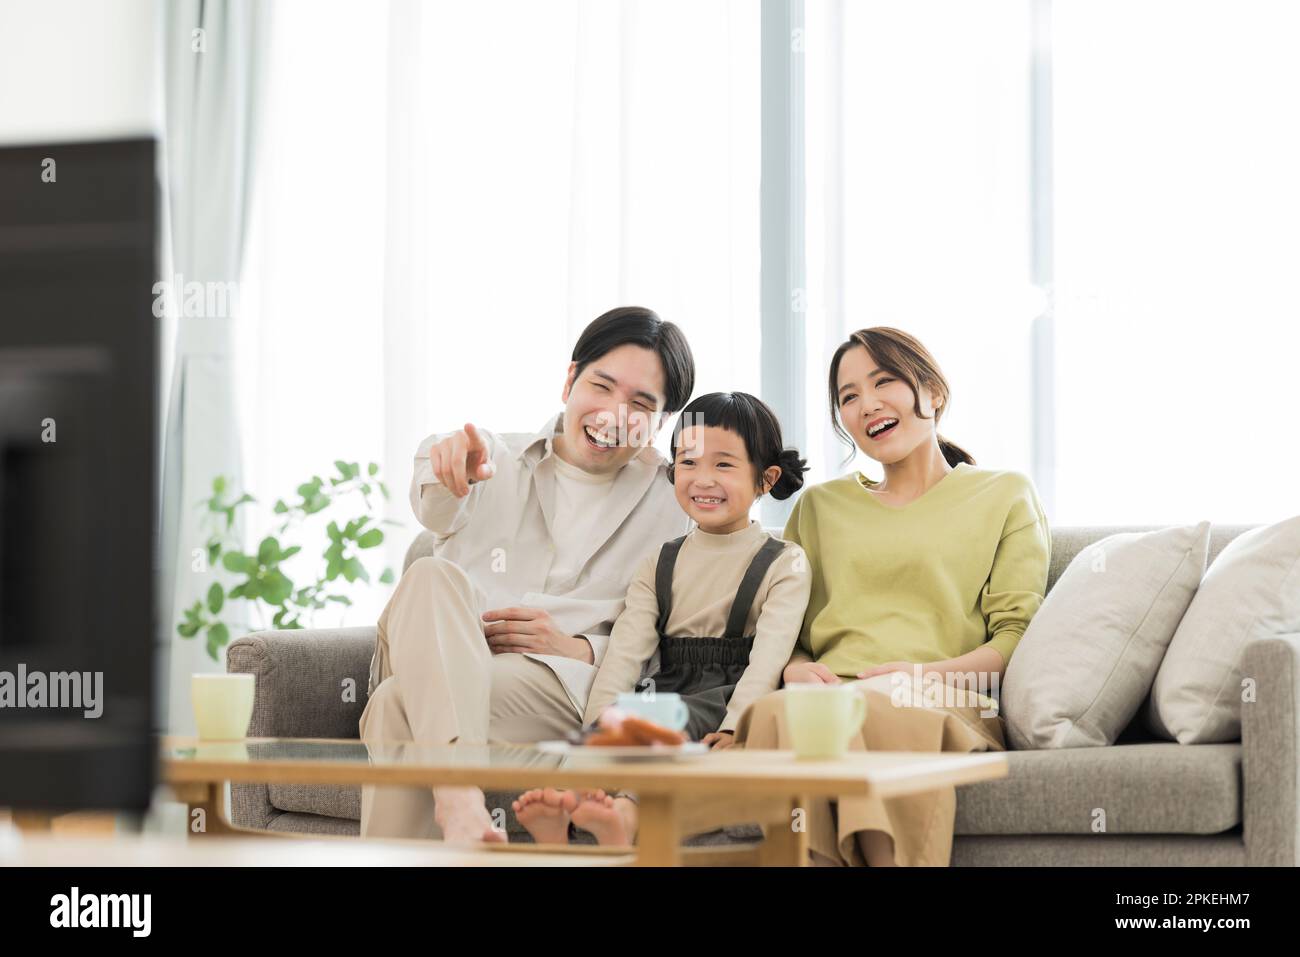 Family watching TV Stock Photo